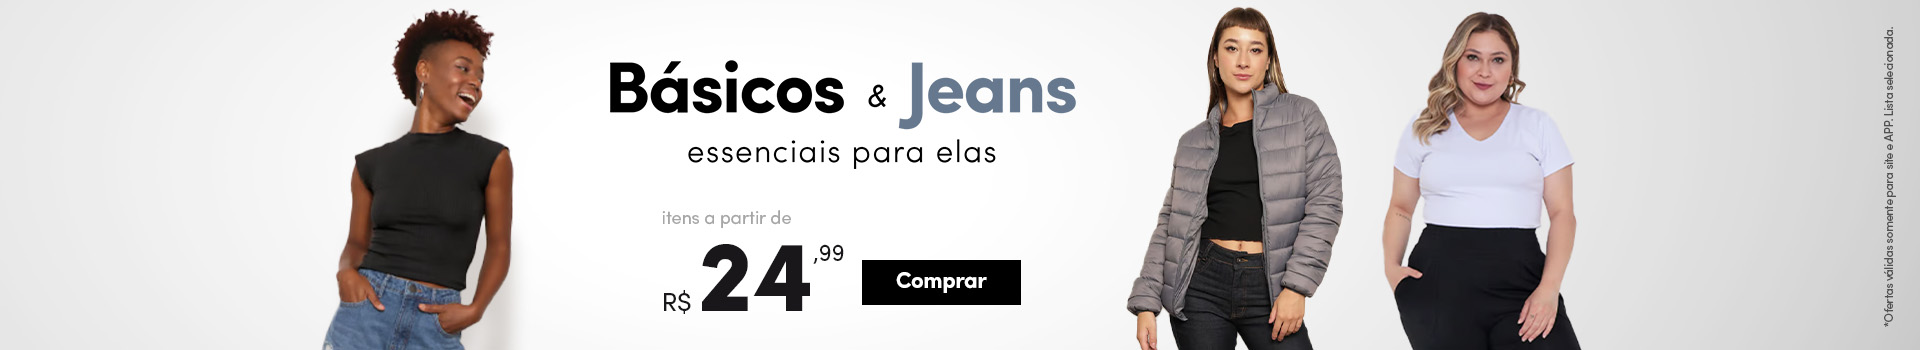 Básicos & Jeans - Essenciais para elas - Itens a partir de R$24,99